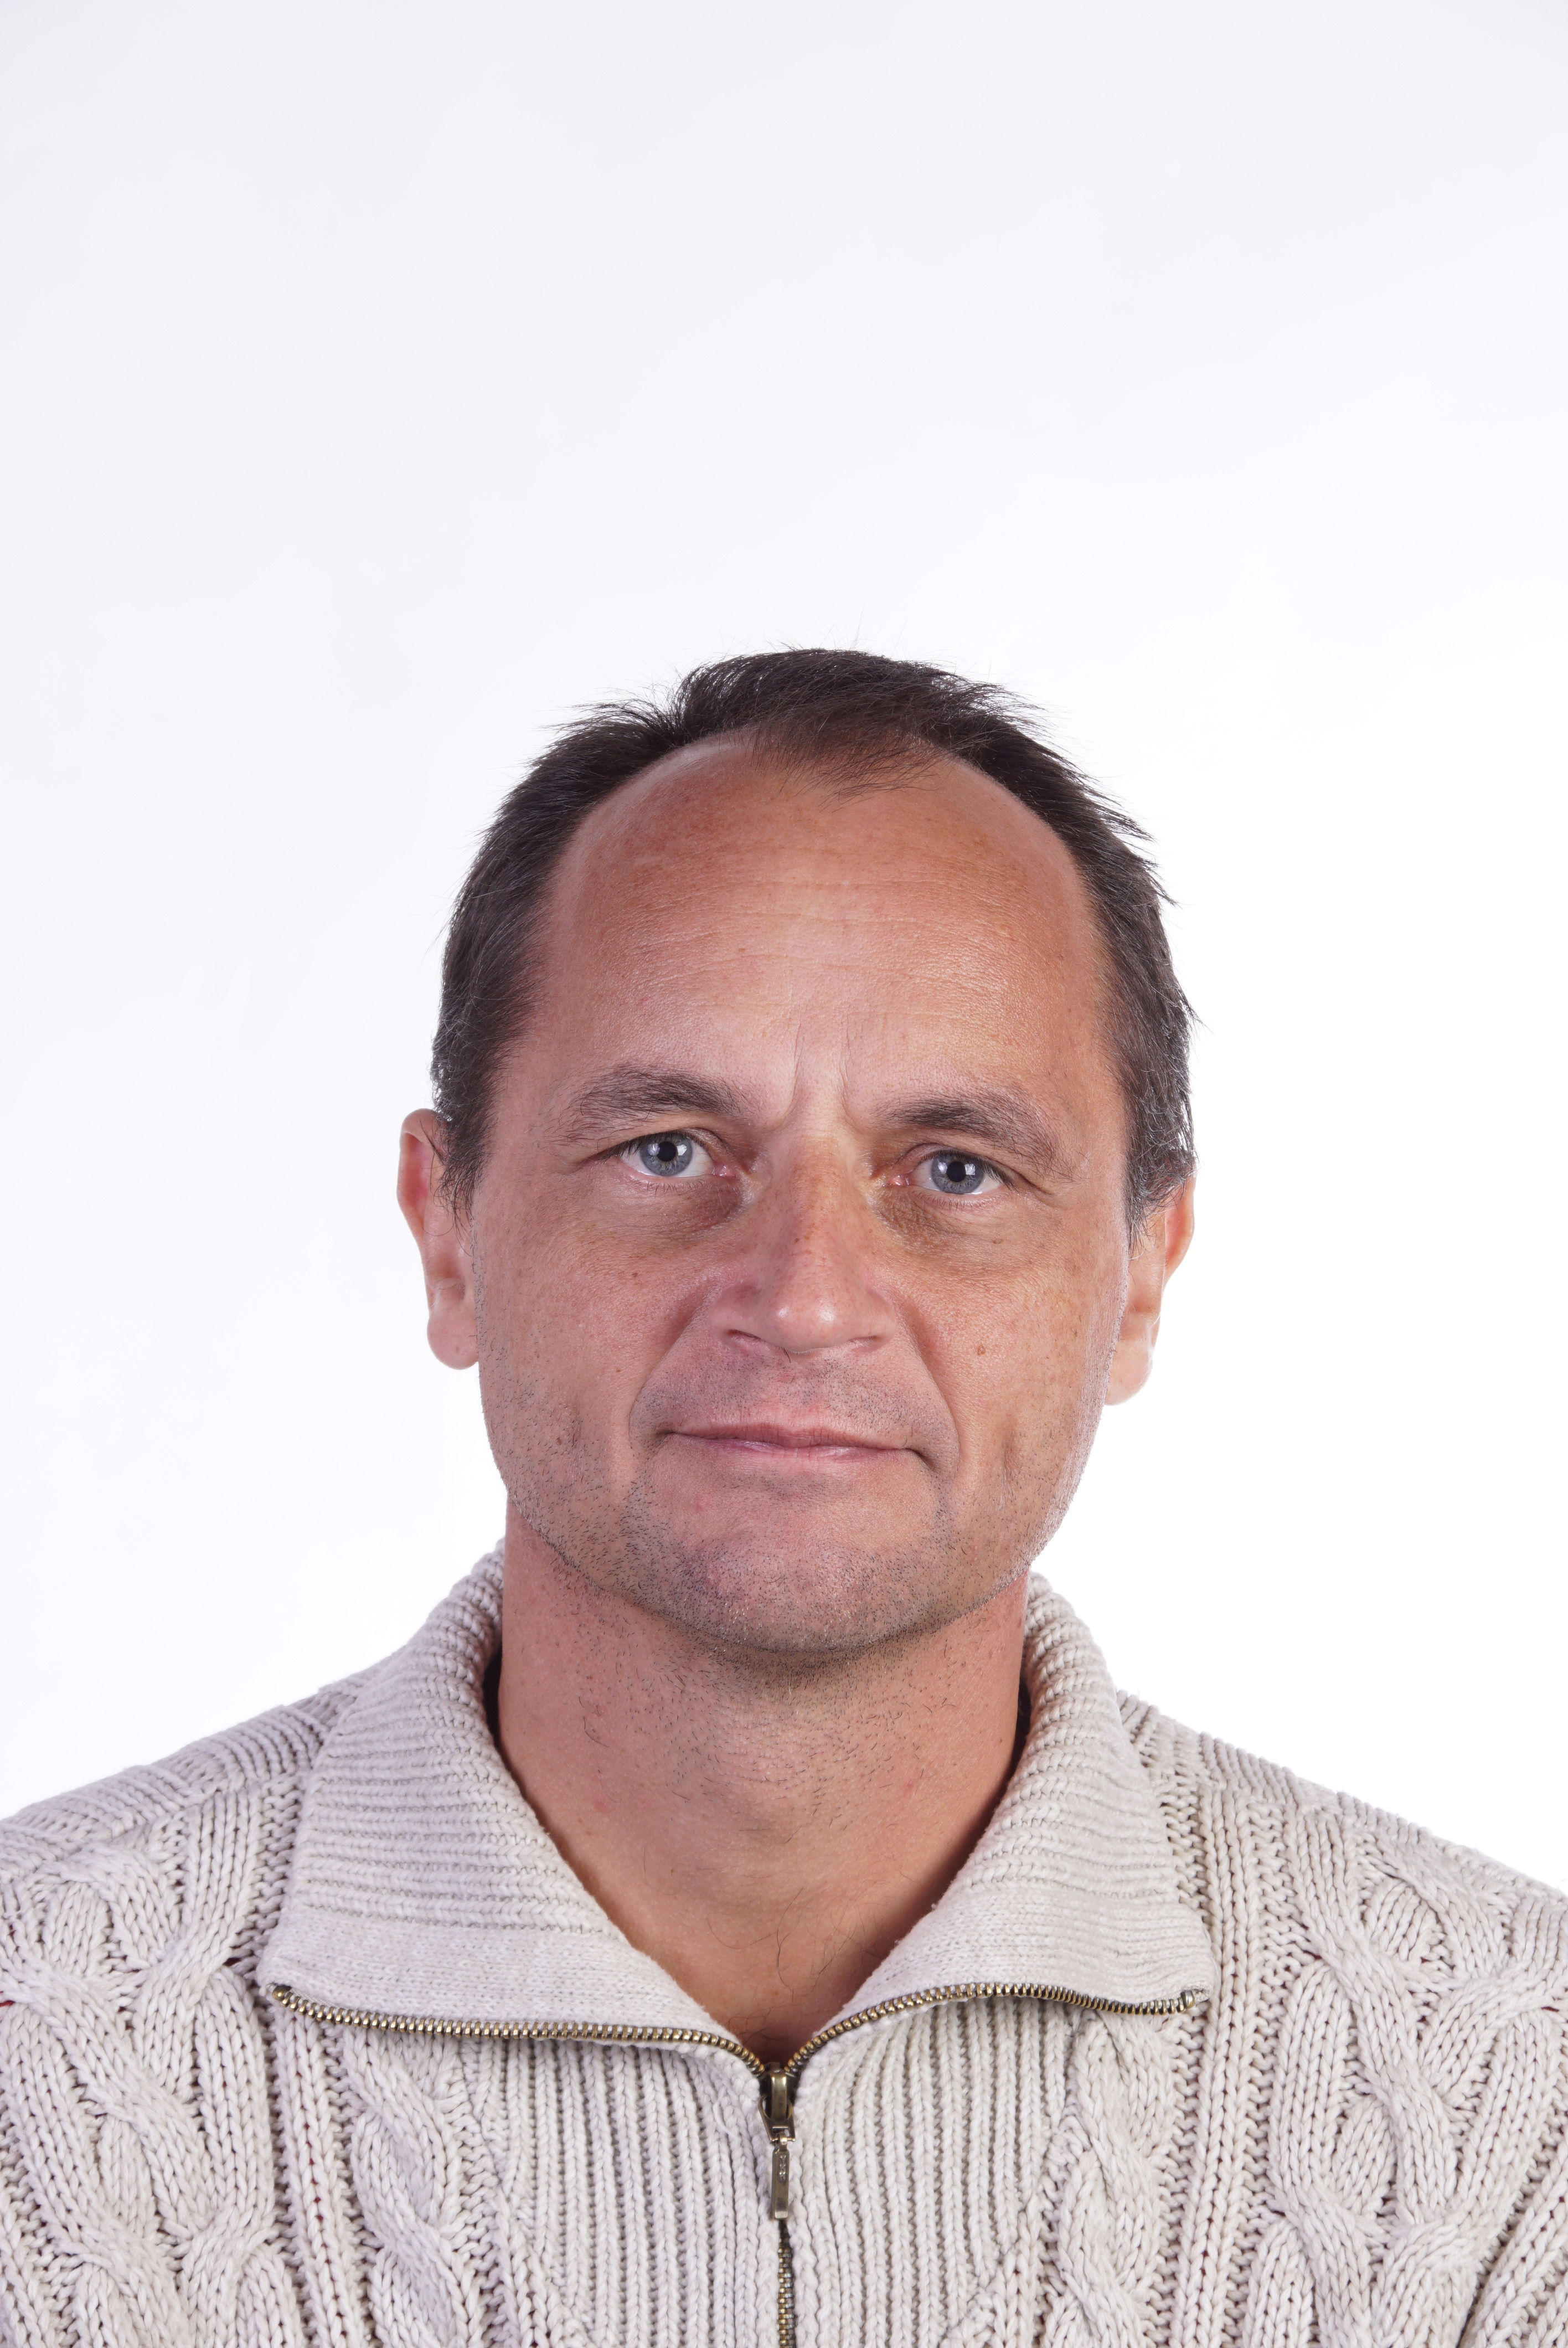 Peter K. Theil er per 1. marts 2021 udnævnt til professor i ernæring og laktationsfysiologi ved Institut for Husdyrvidenskab, Aarhus Universitet.